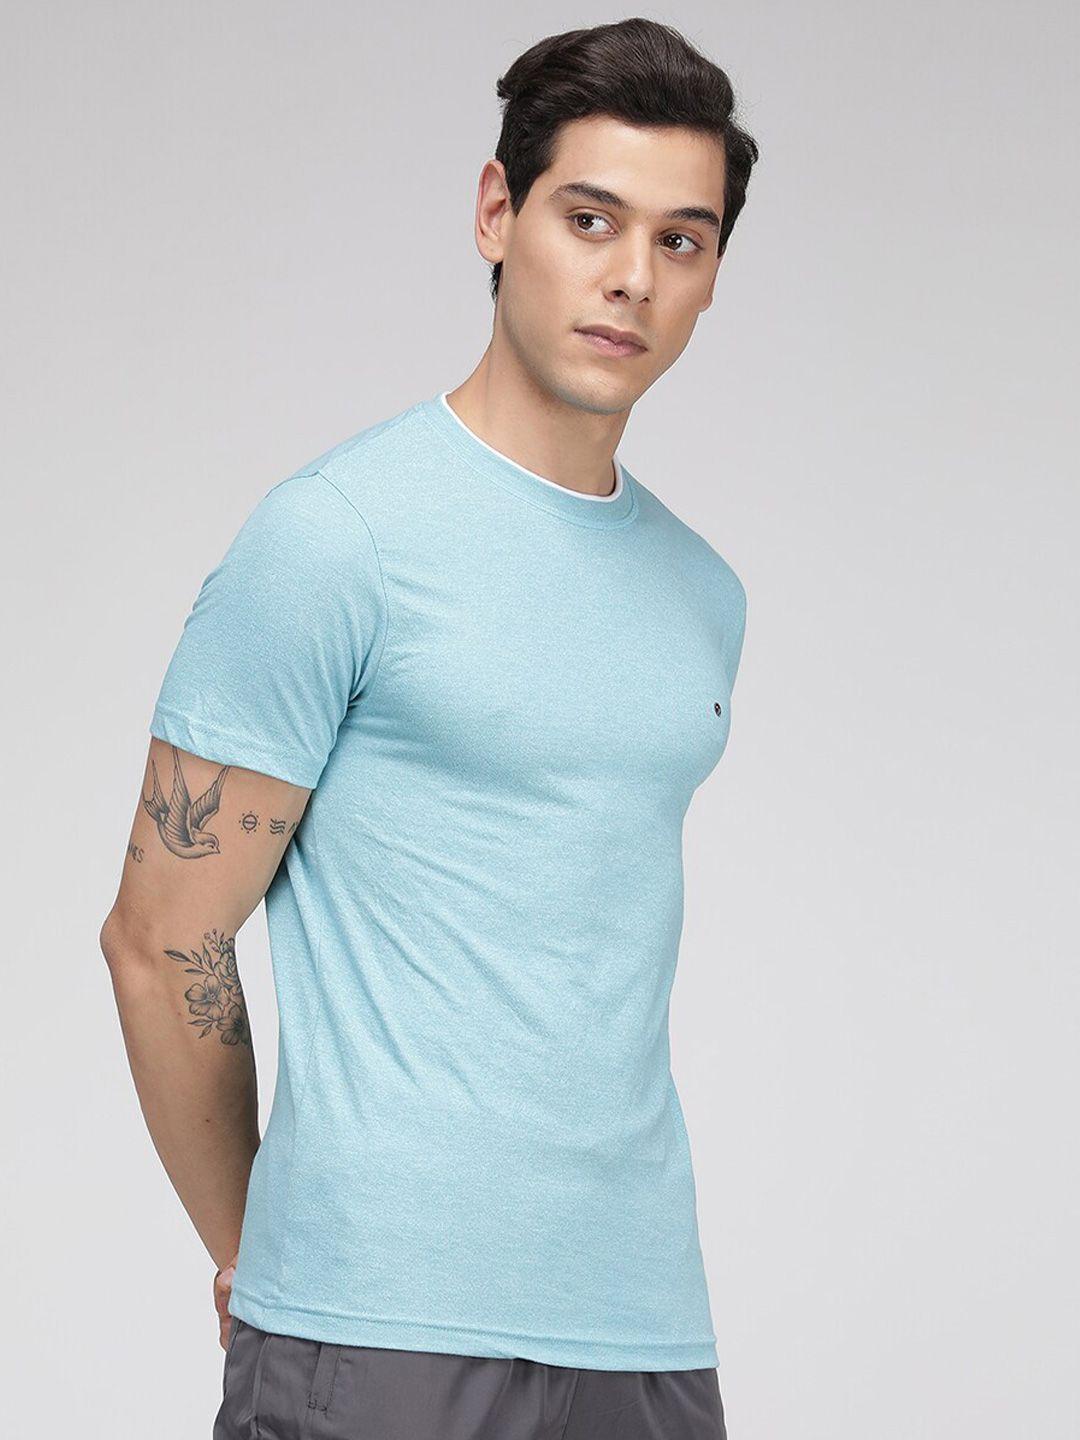 sporto round neck short sleeves sports t-shirt